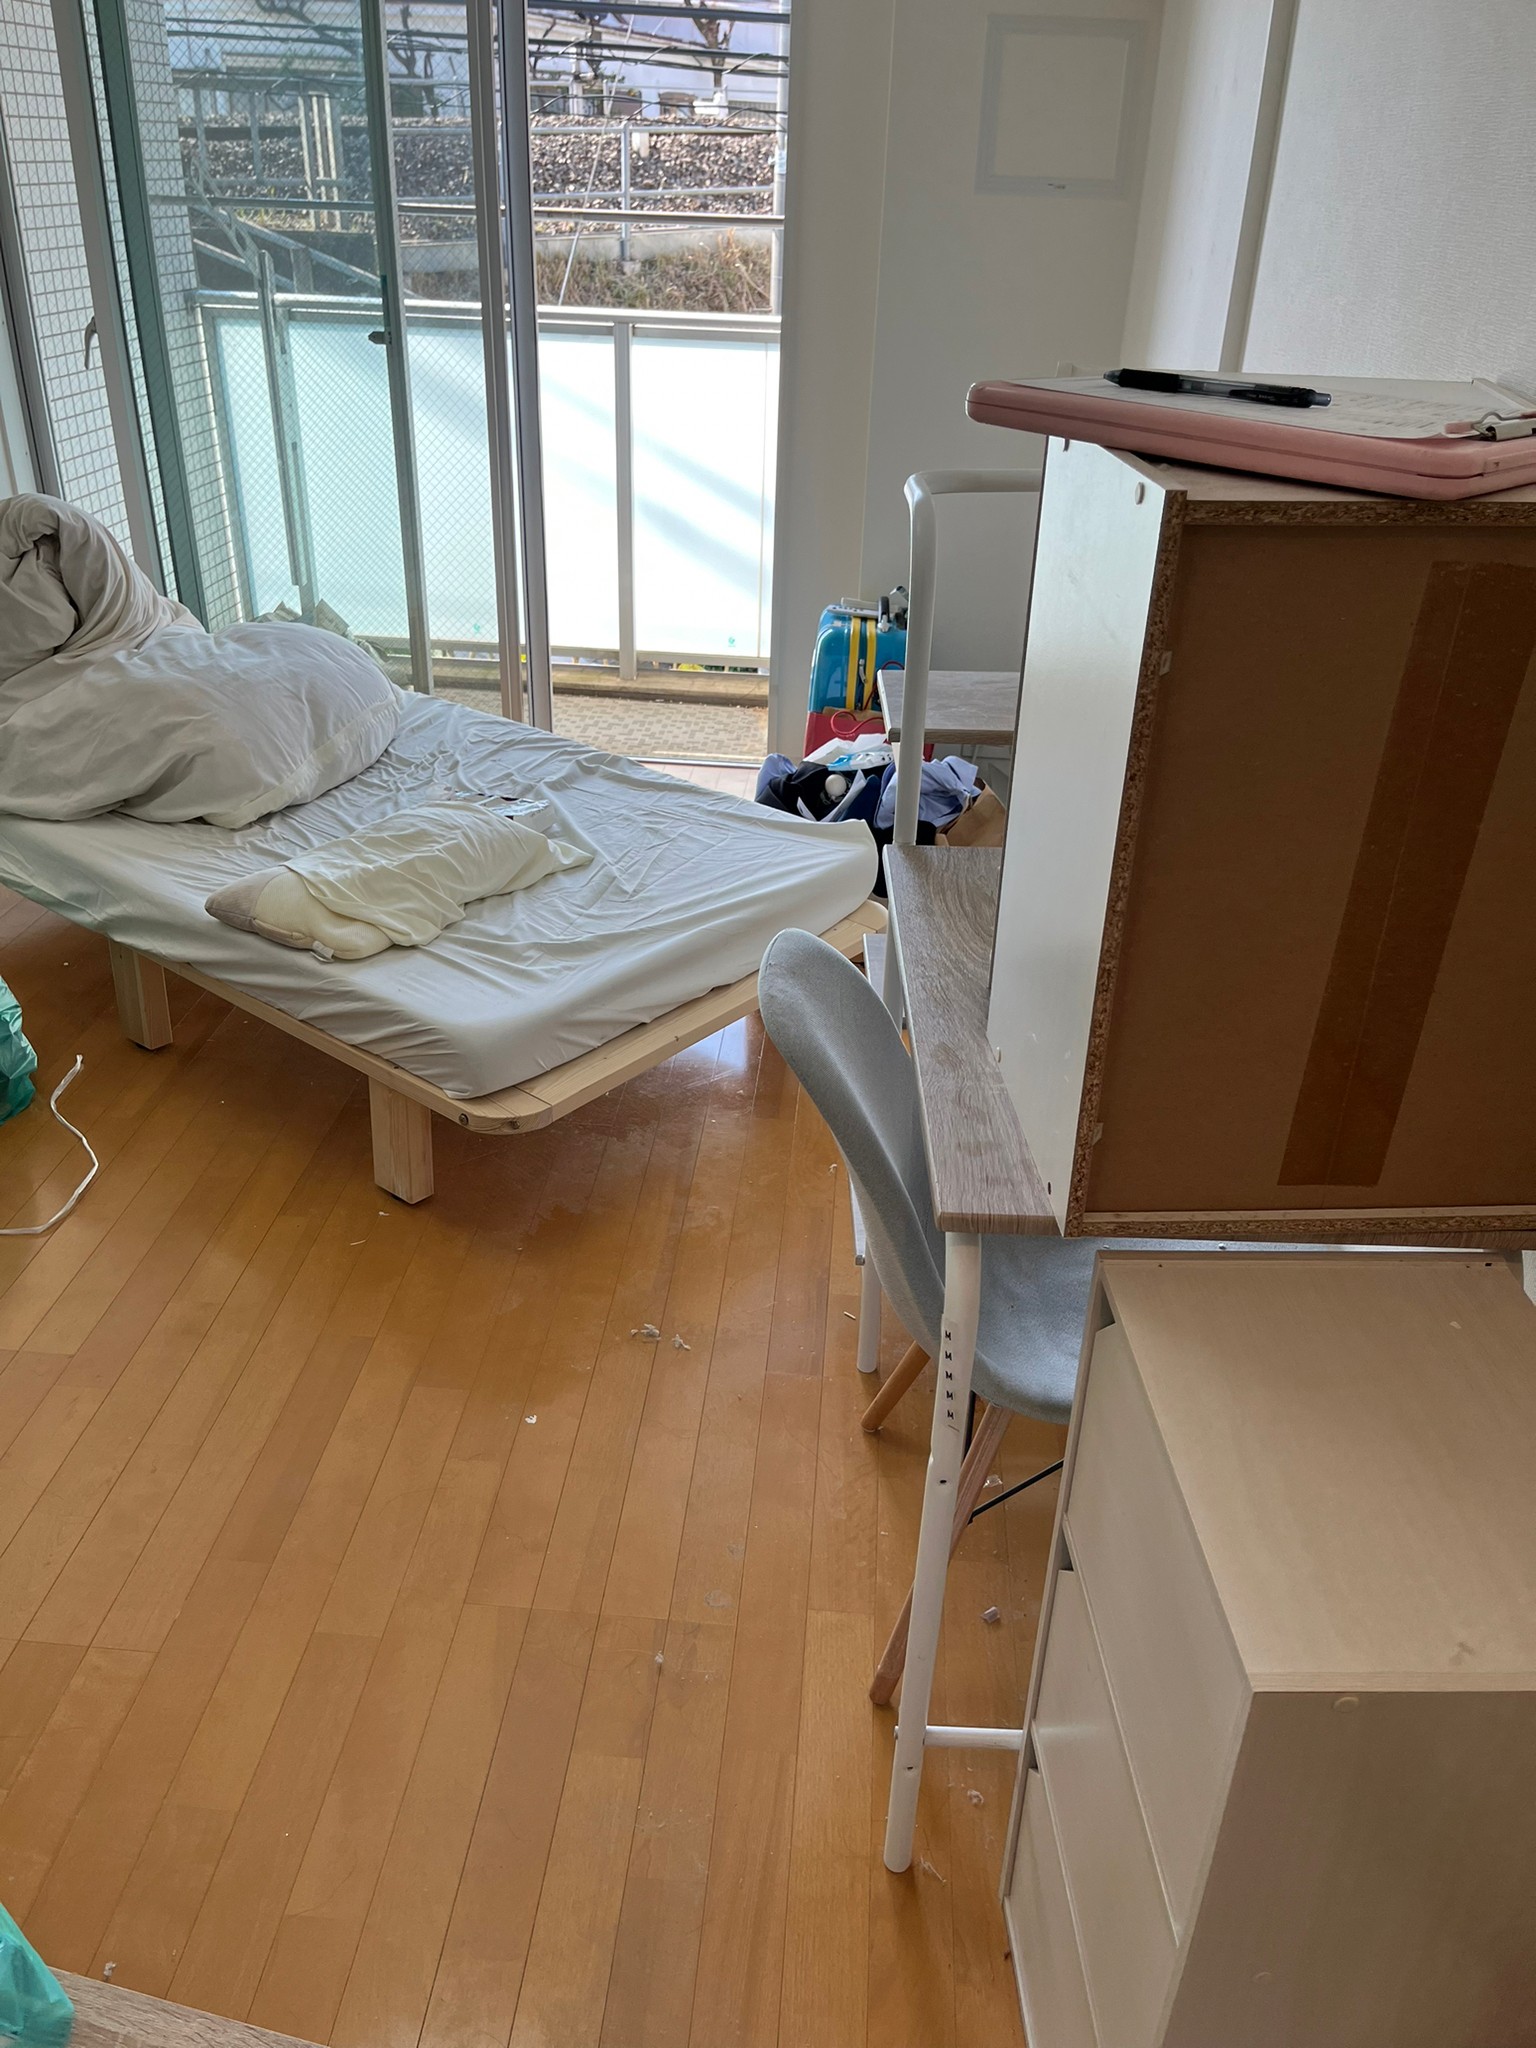 ベッド、机、椅子、カラーボックスの回収前の状態